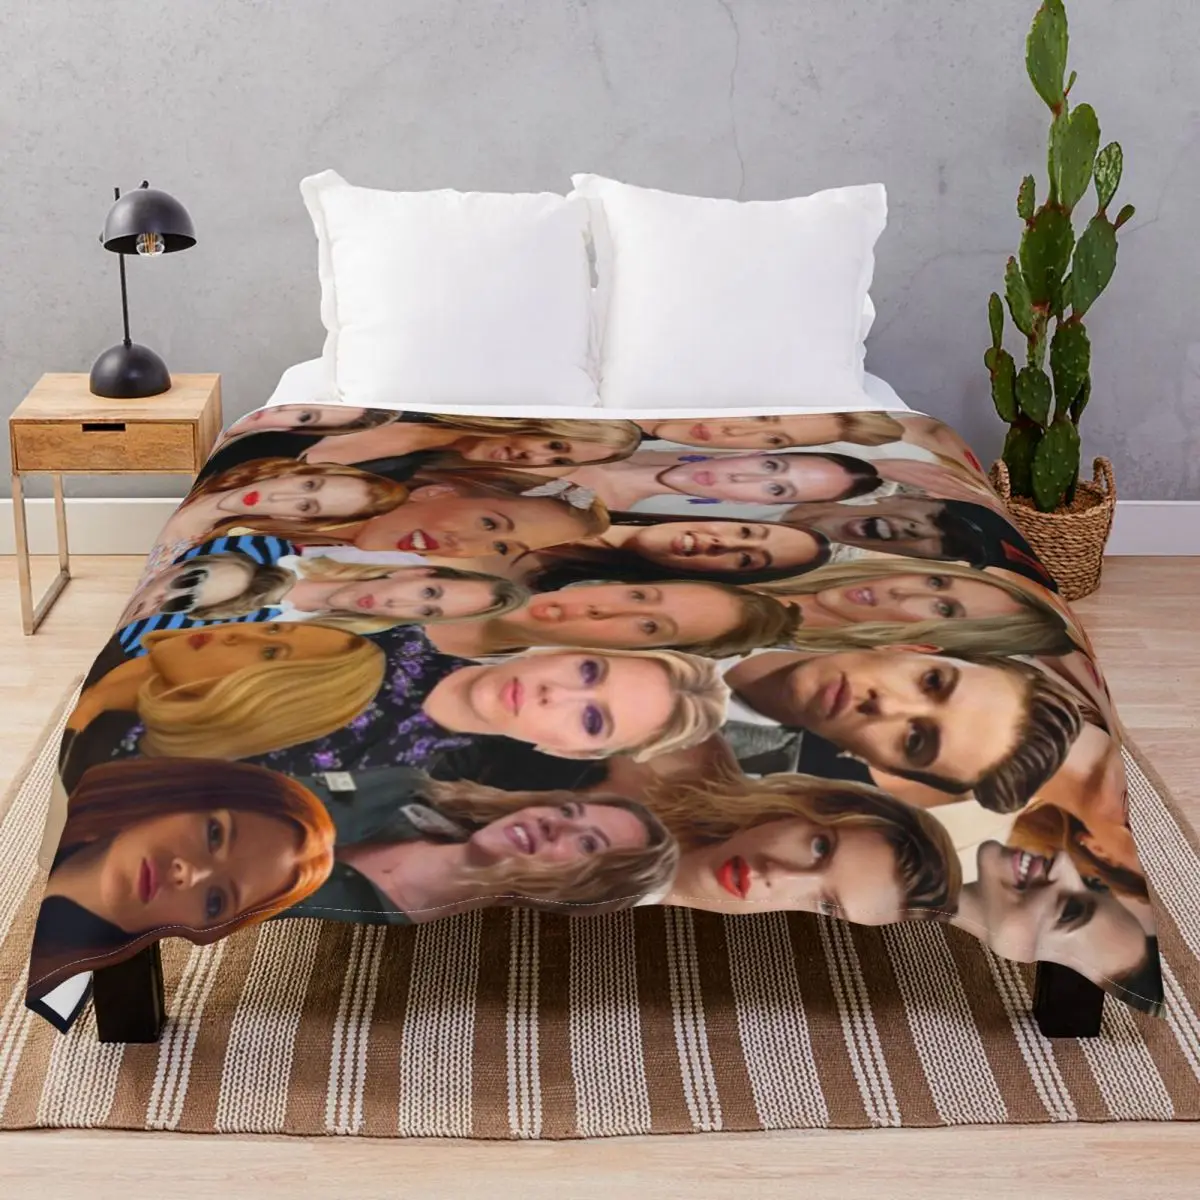 Scarlett Johansson Photo Blankets Velvet Printed Fluffy Throw Blanket for Bed Sofa Camp Office